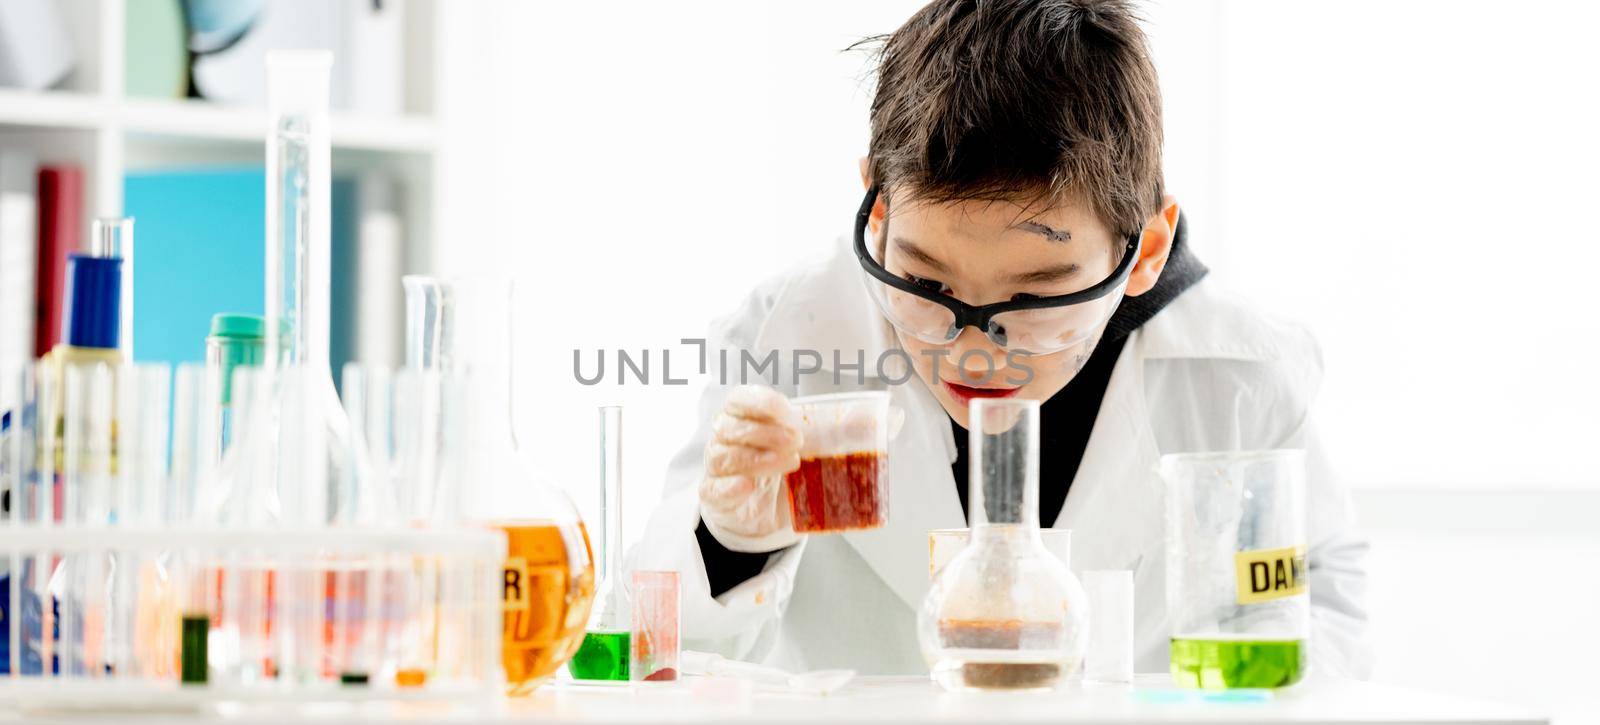 School boy in chemistry class by tan4ikk1